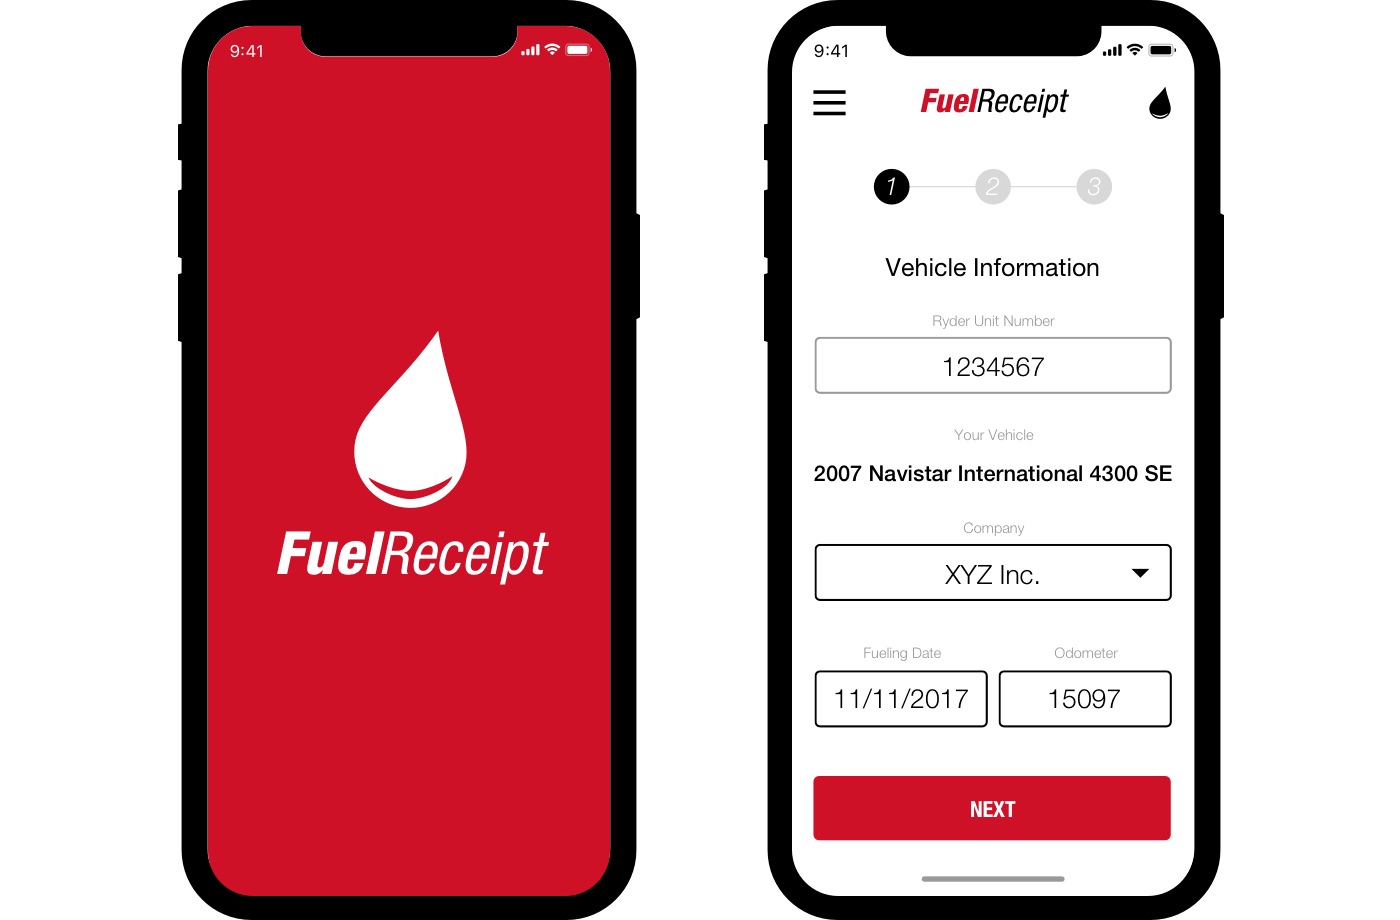 Fuel Receipt App screens